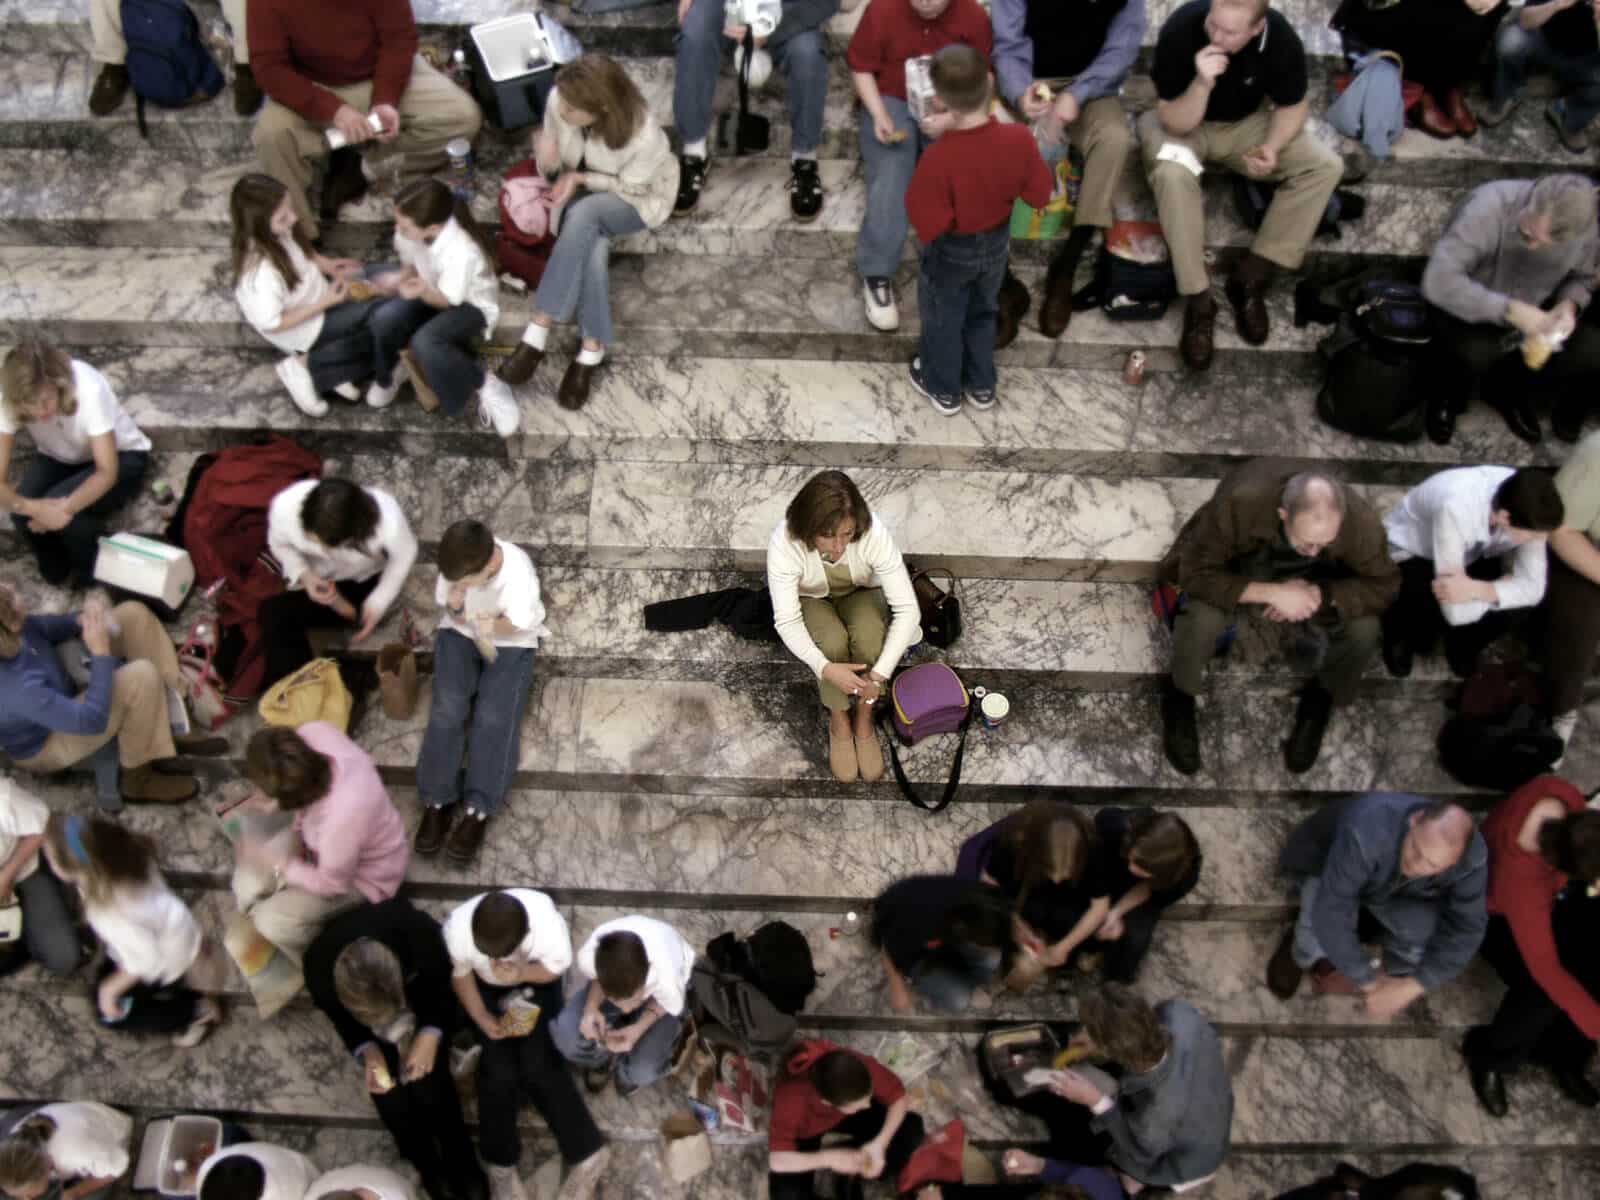 Gruppe von Menschen sitzen auf einer Treppe, eine Person sitzt isoliert